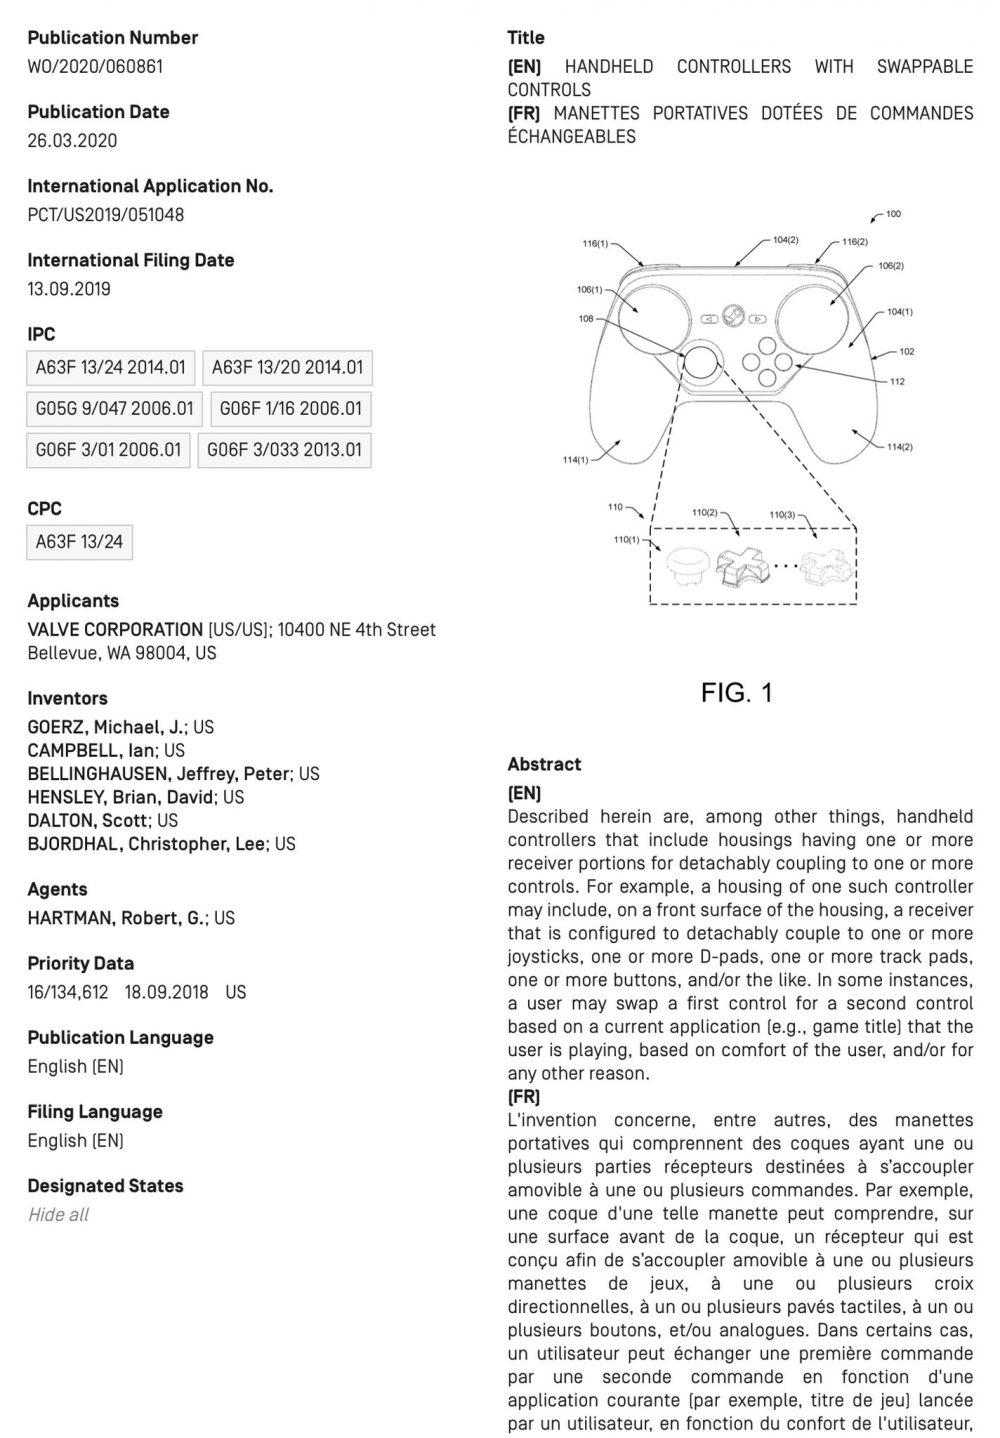 Patente del Steam Controller v2